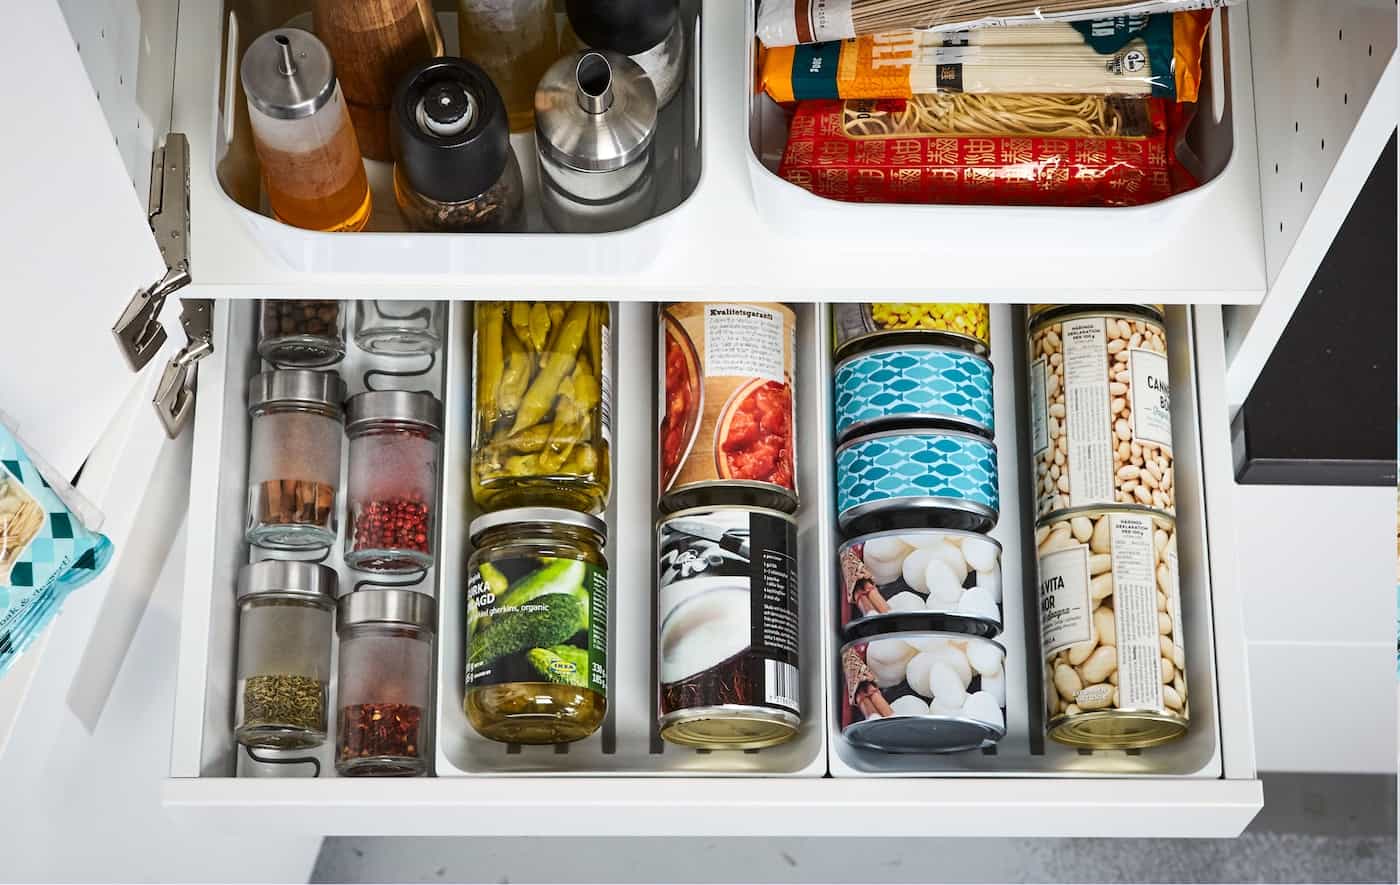 Satisfying Ways to Reorganize a Kitchen